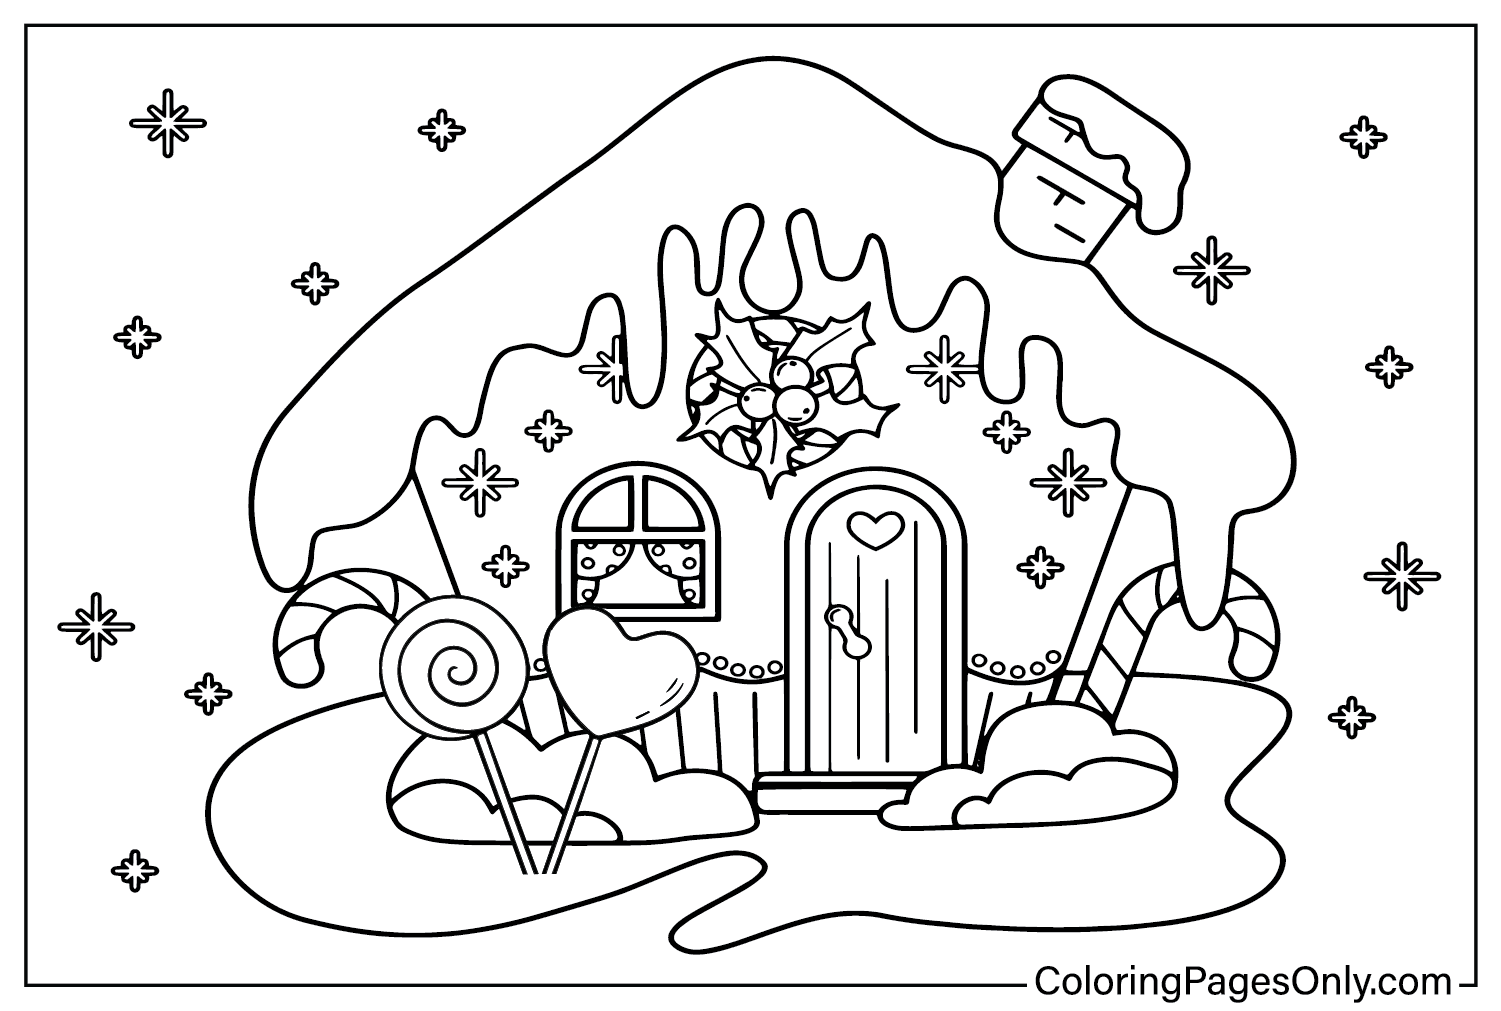 Página para colorir da Gingerbread House para impressão na Gingerbread House